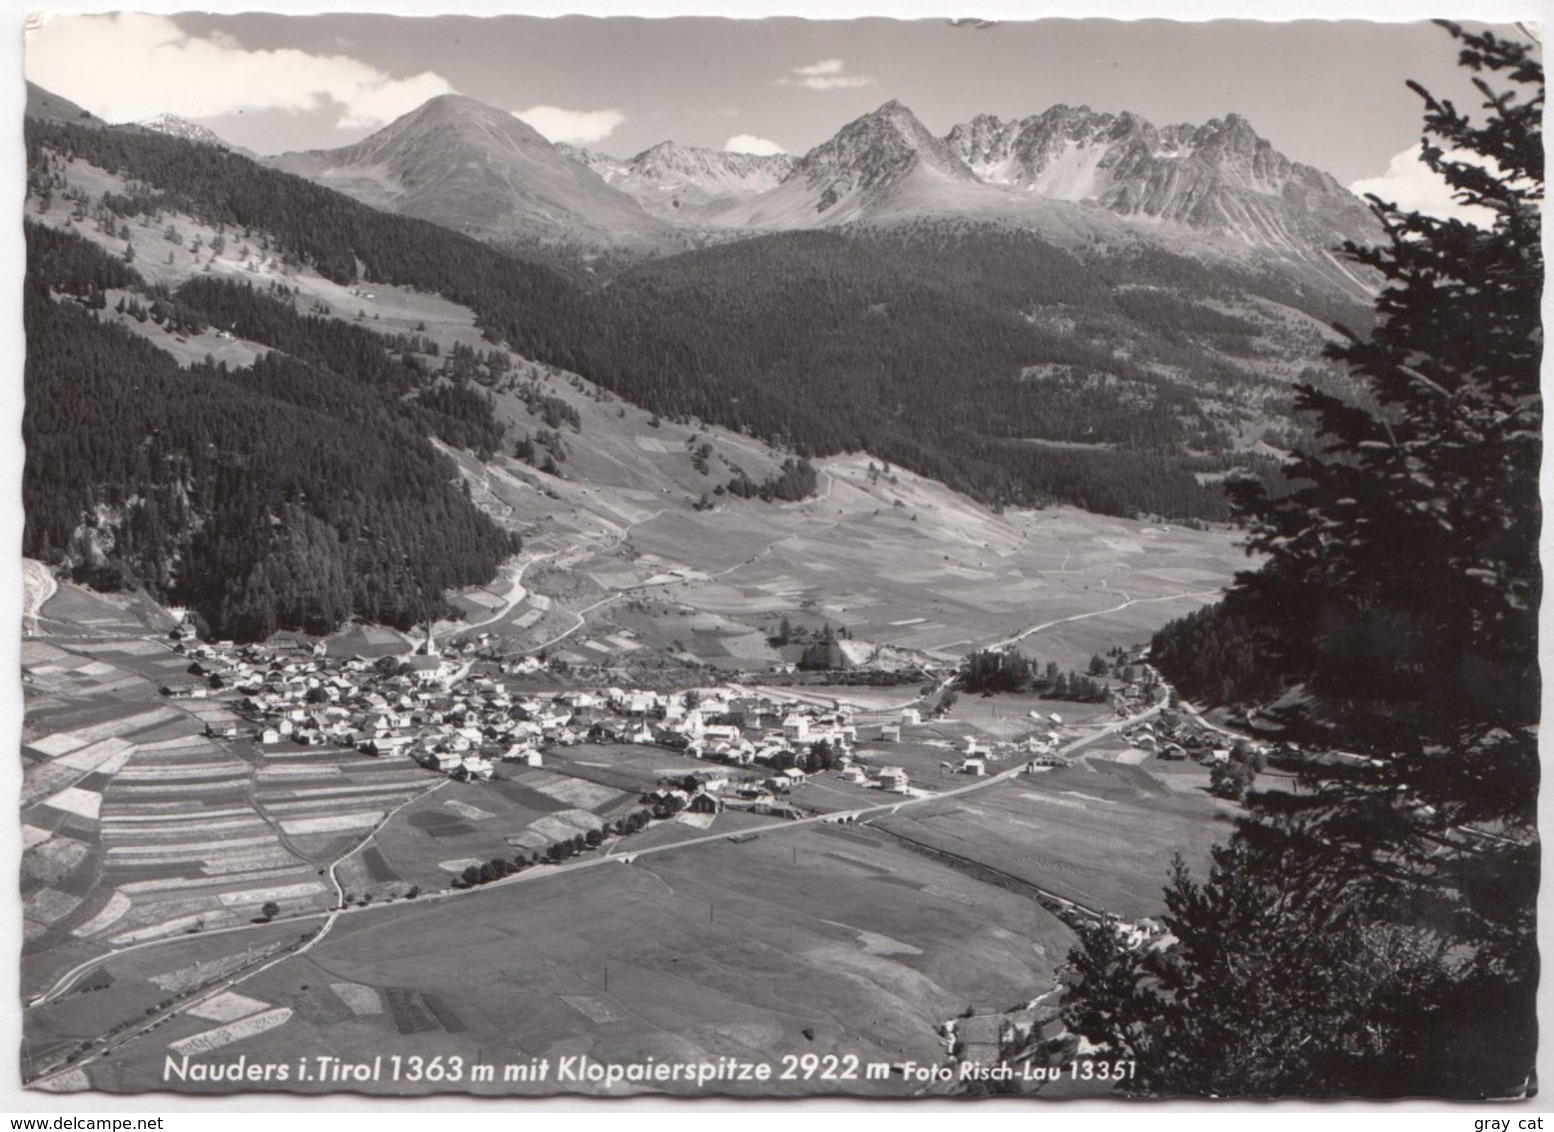 Nauders I Tirol 1363 M. Mit Klopaierspitze 2922 M, Austria, 1958 Used Real Photo Postcard [22380] - Nauders